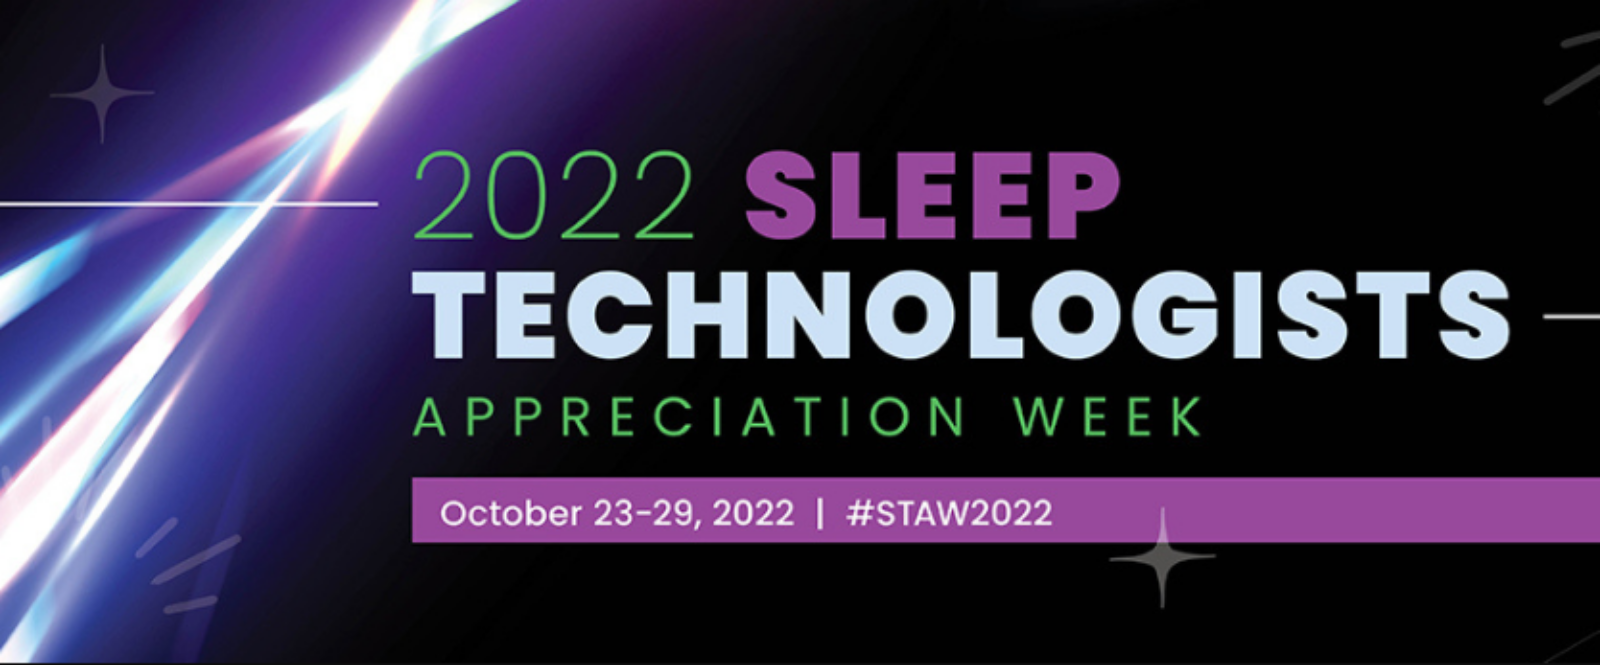 Happy Sleep Technologists Week!